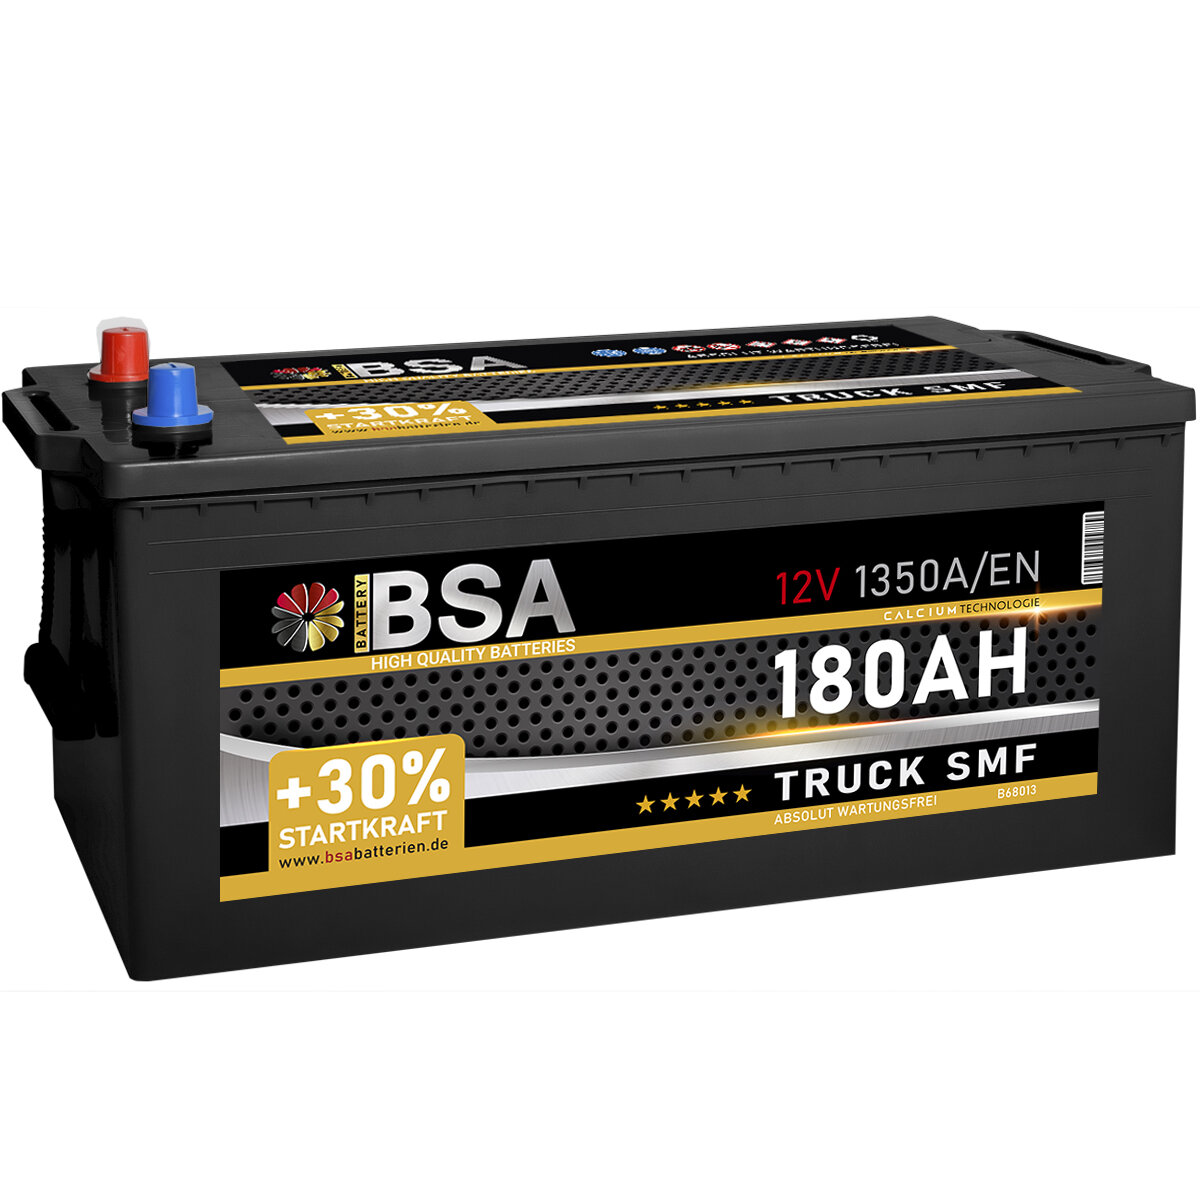 BSA Truck SMF LKW Batterie 180Ah 12V, 165,75 €